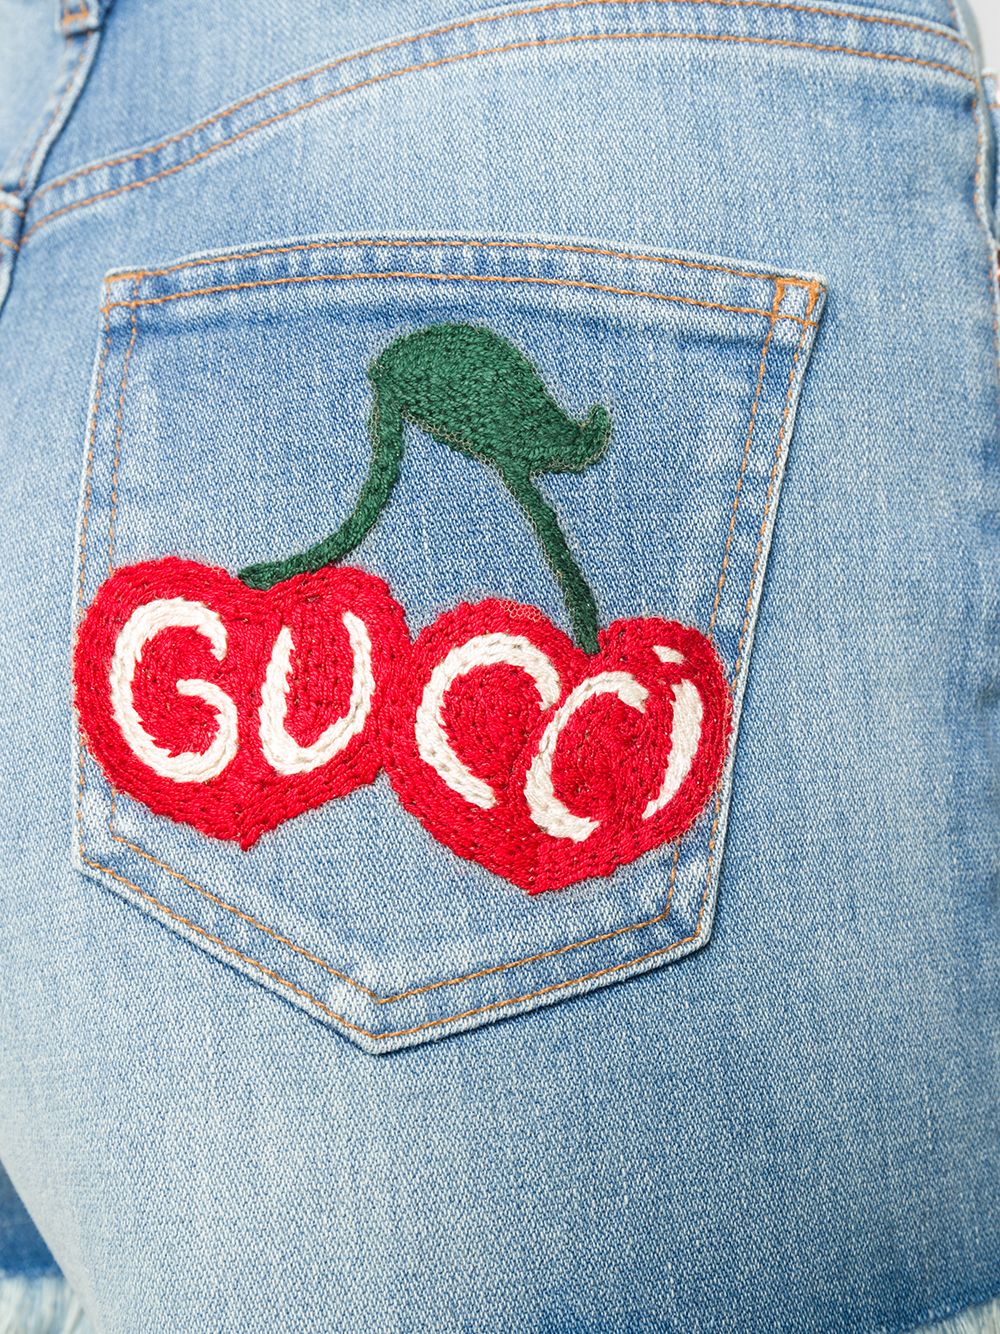 фото Gucci джинсовые шорты с бахромой